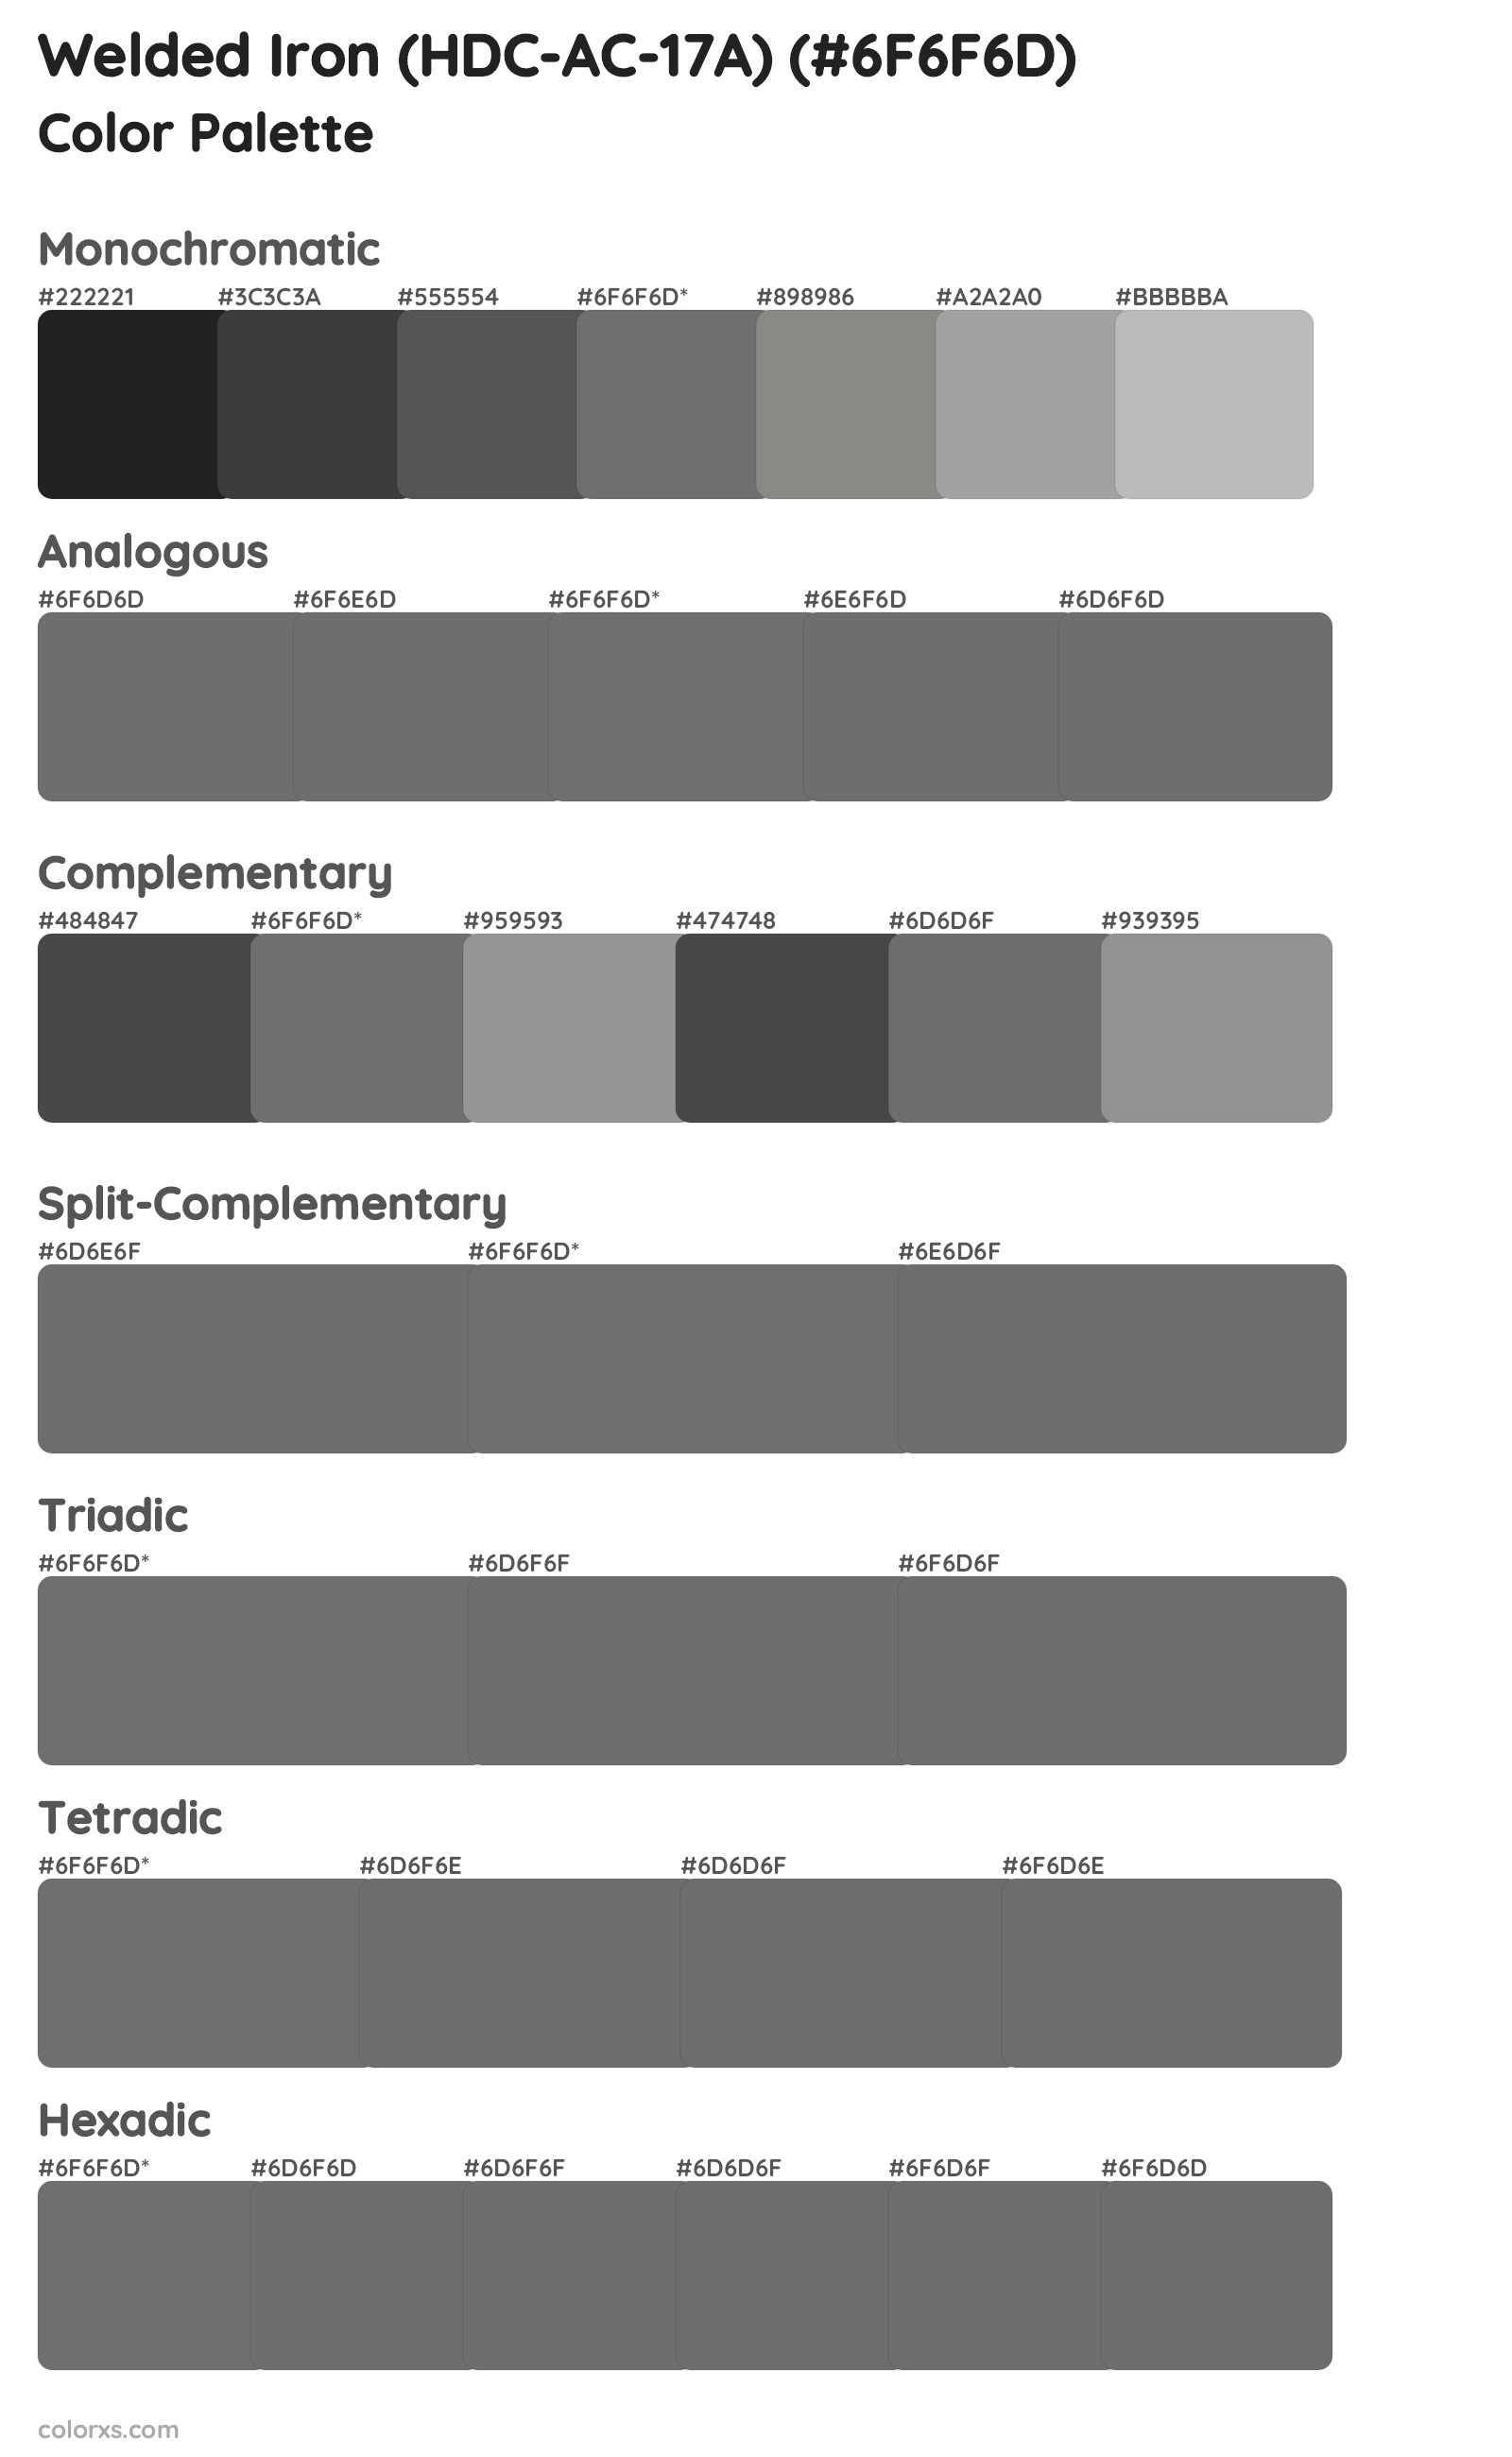 Welded Iron (HDC-AC-17A) Color Scheme Palettes